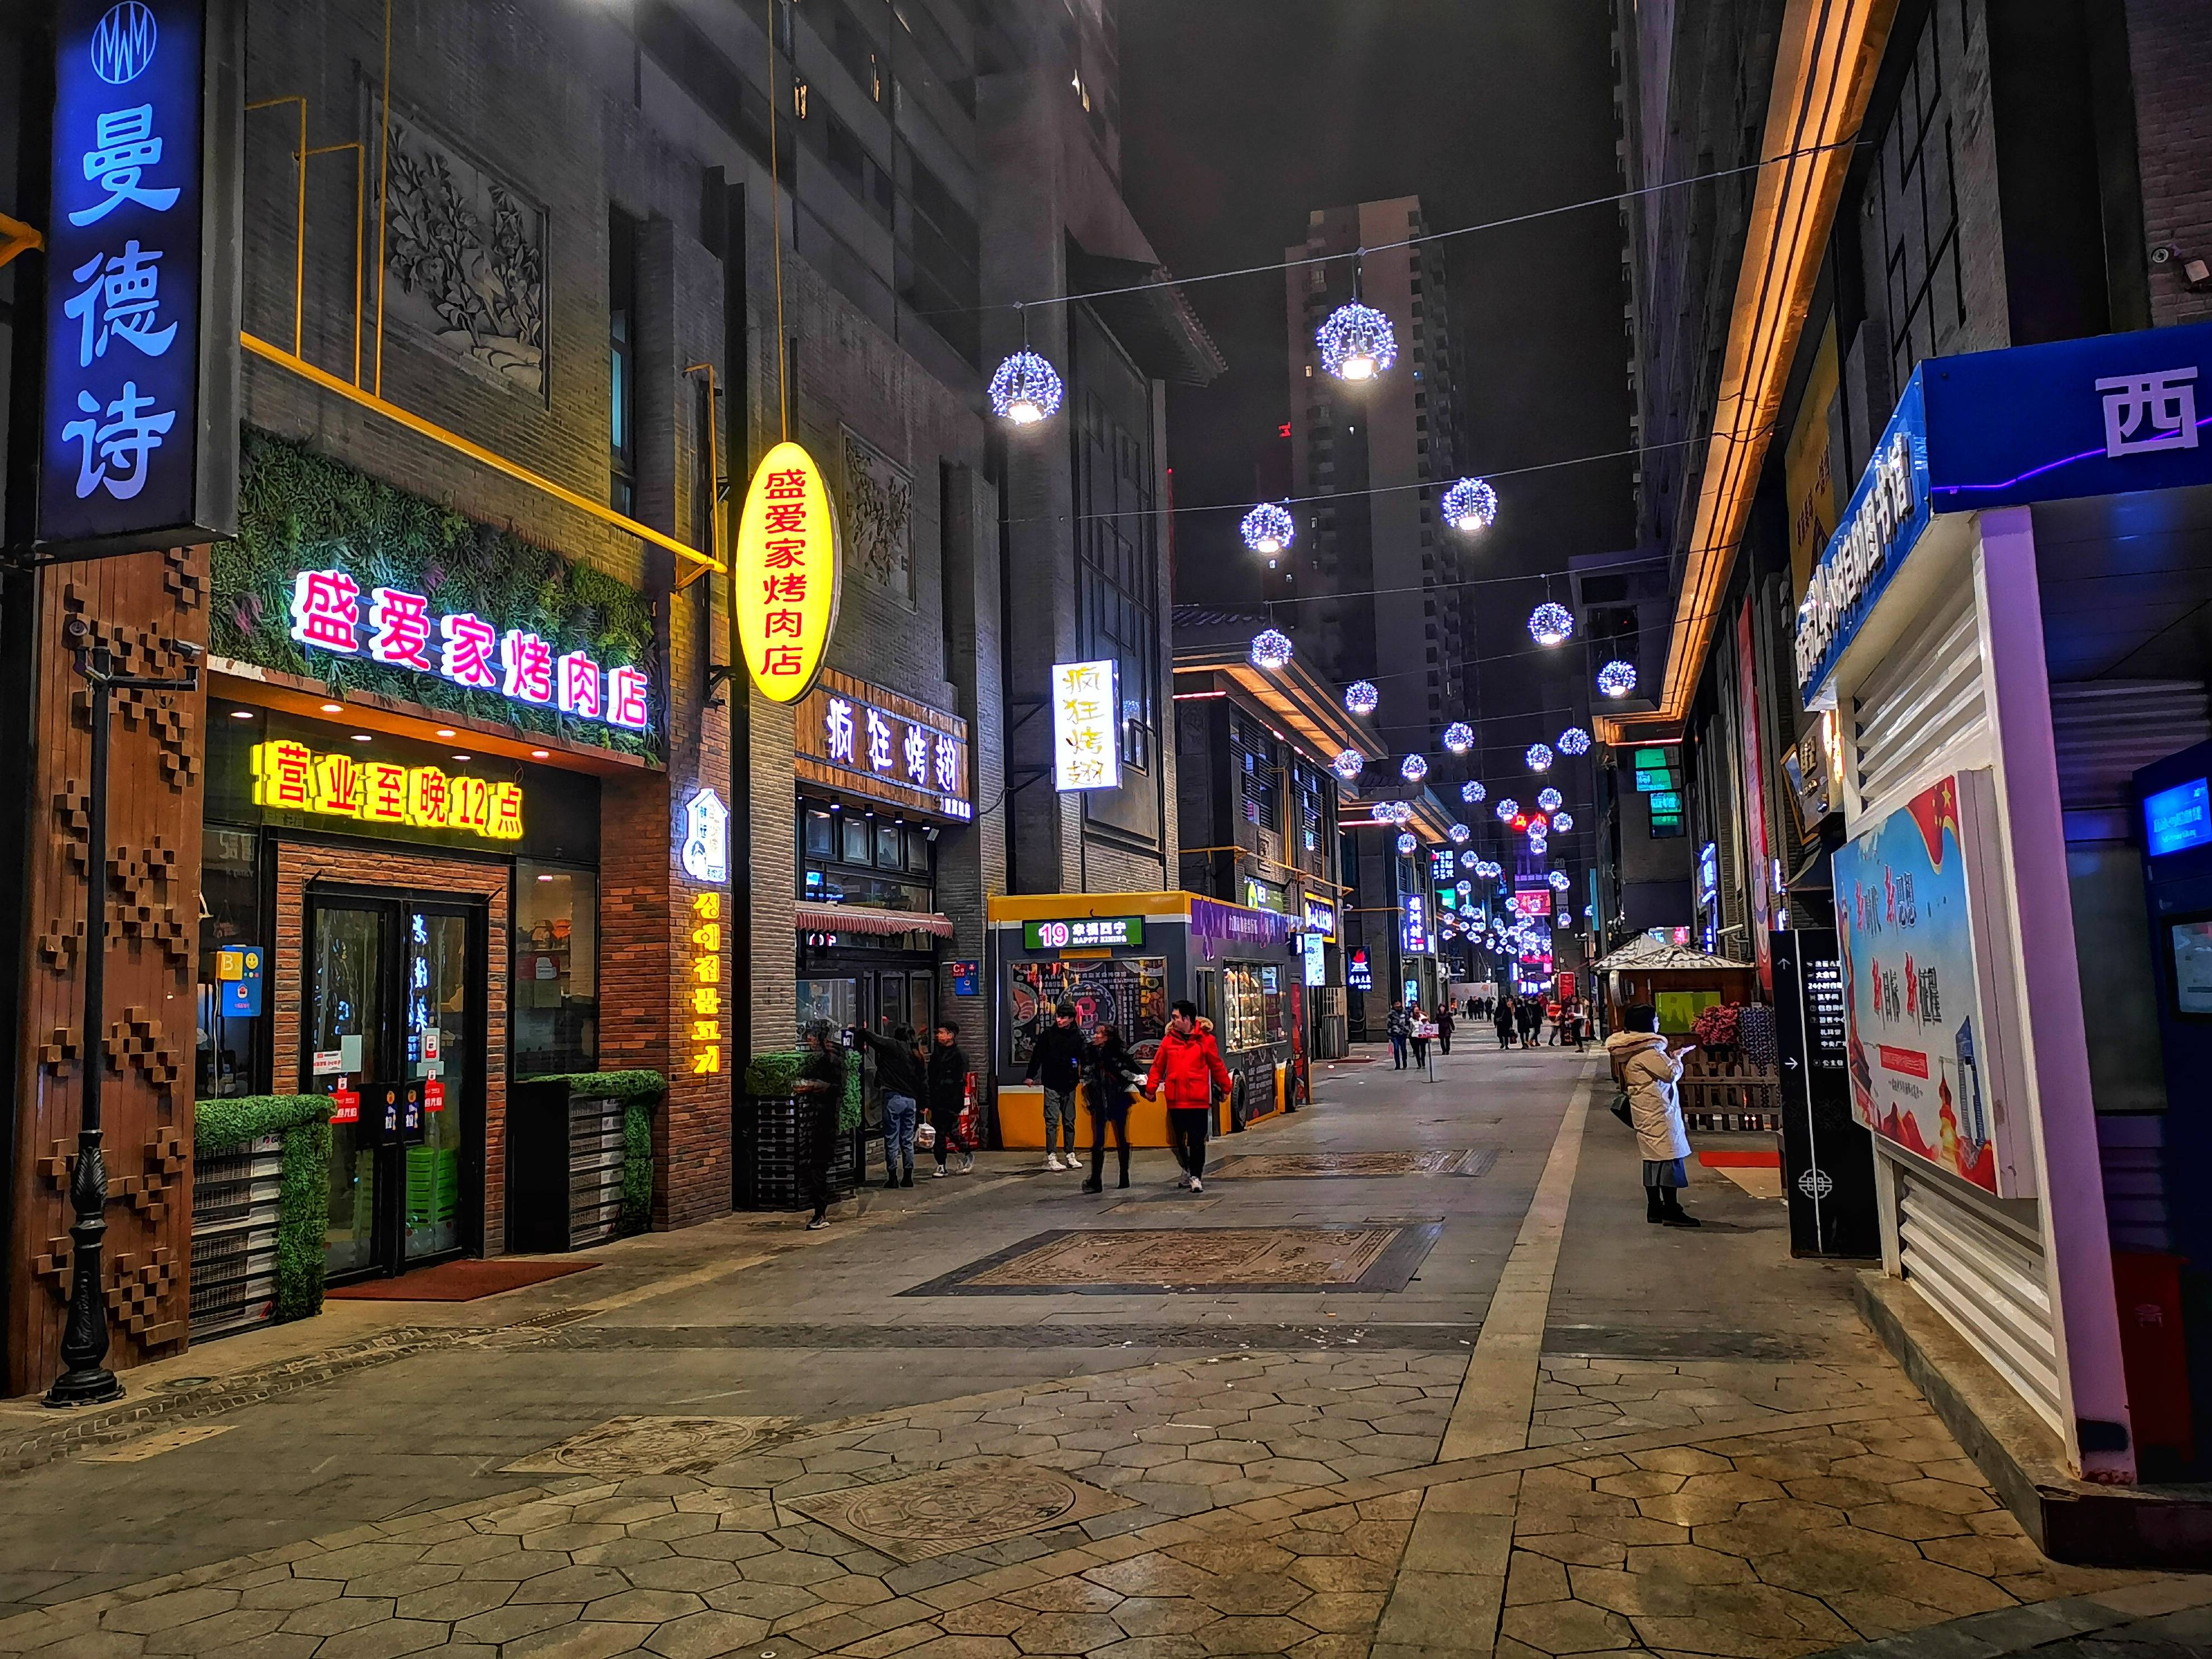 它是西宁市最漂亮的步行街,夜晚灯光璀璨,就是冬天游客少了点